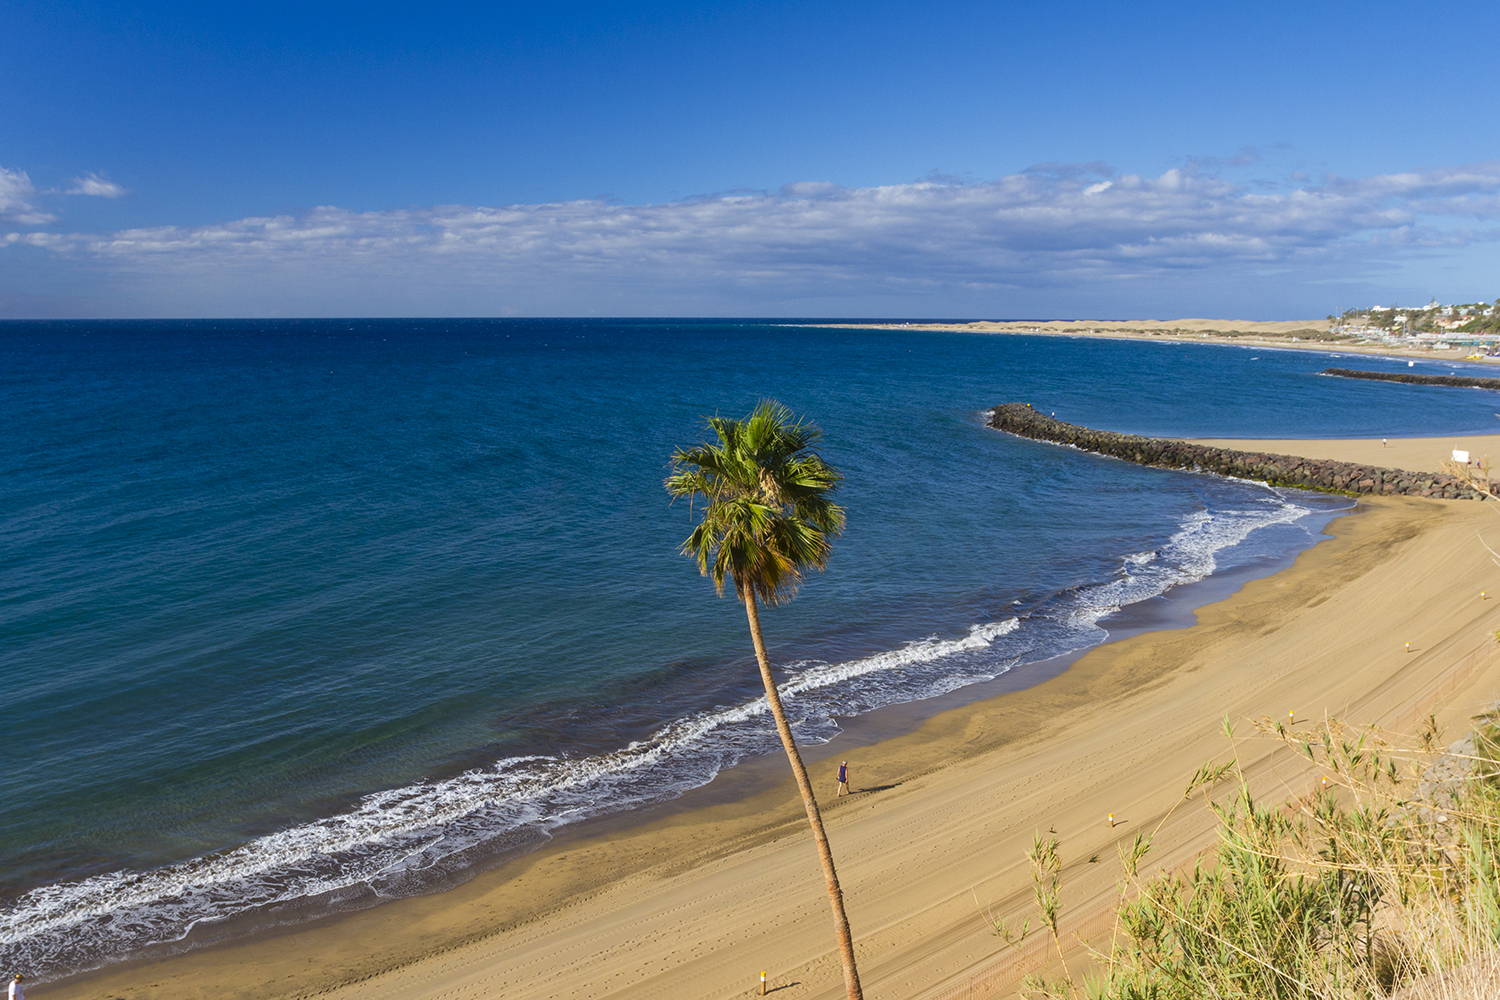 El Cochino beach next to Playa del Inglés